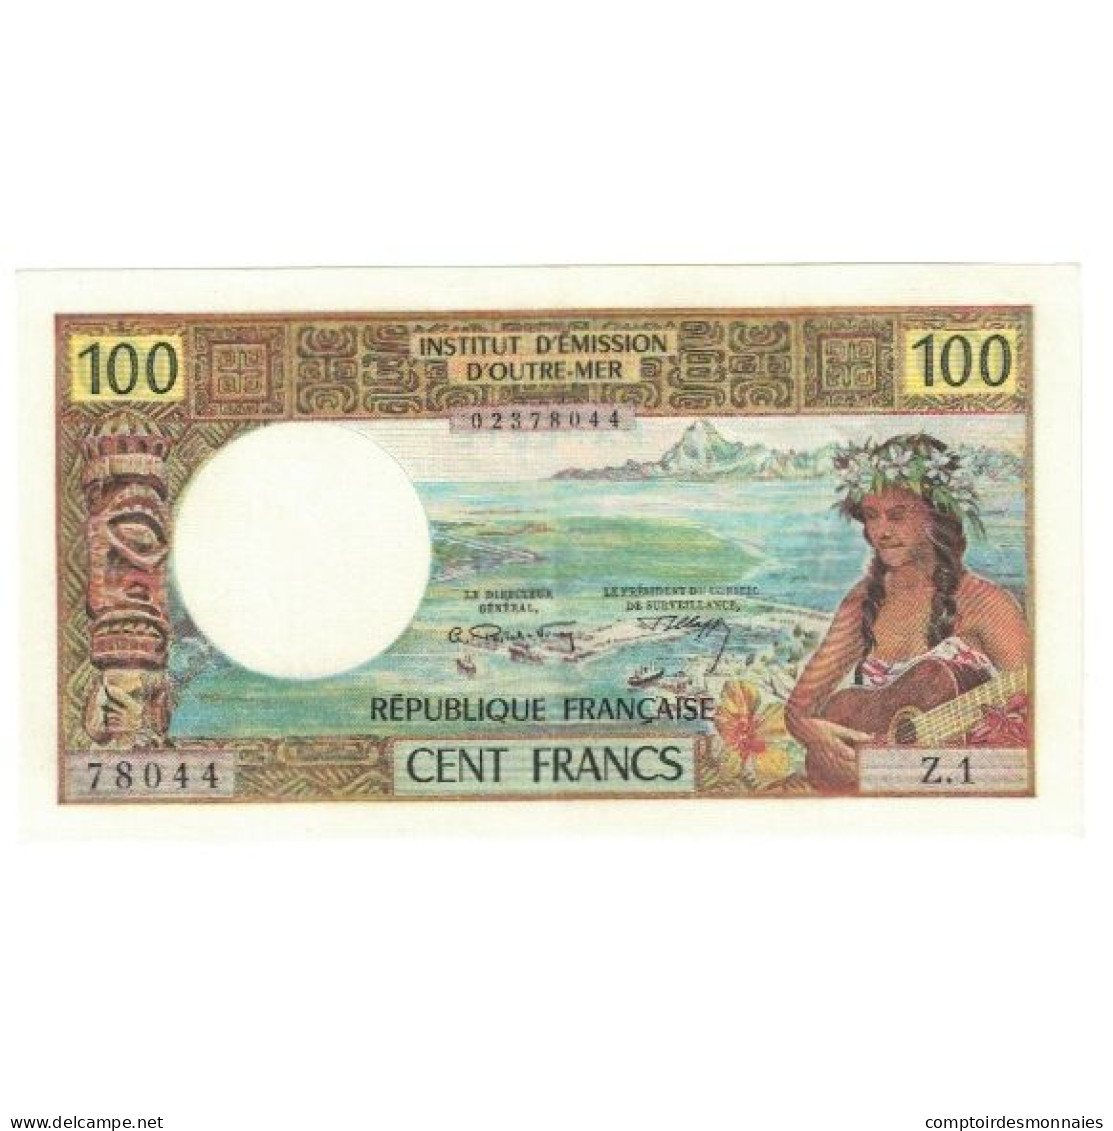 Tahiti, 100 Francs, SPL - Papeete (French Polynesia 1914-1985)